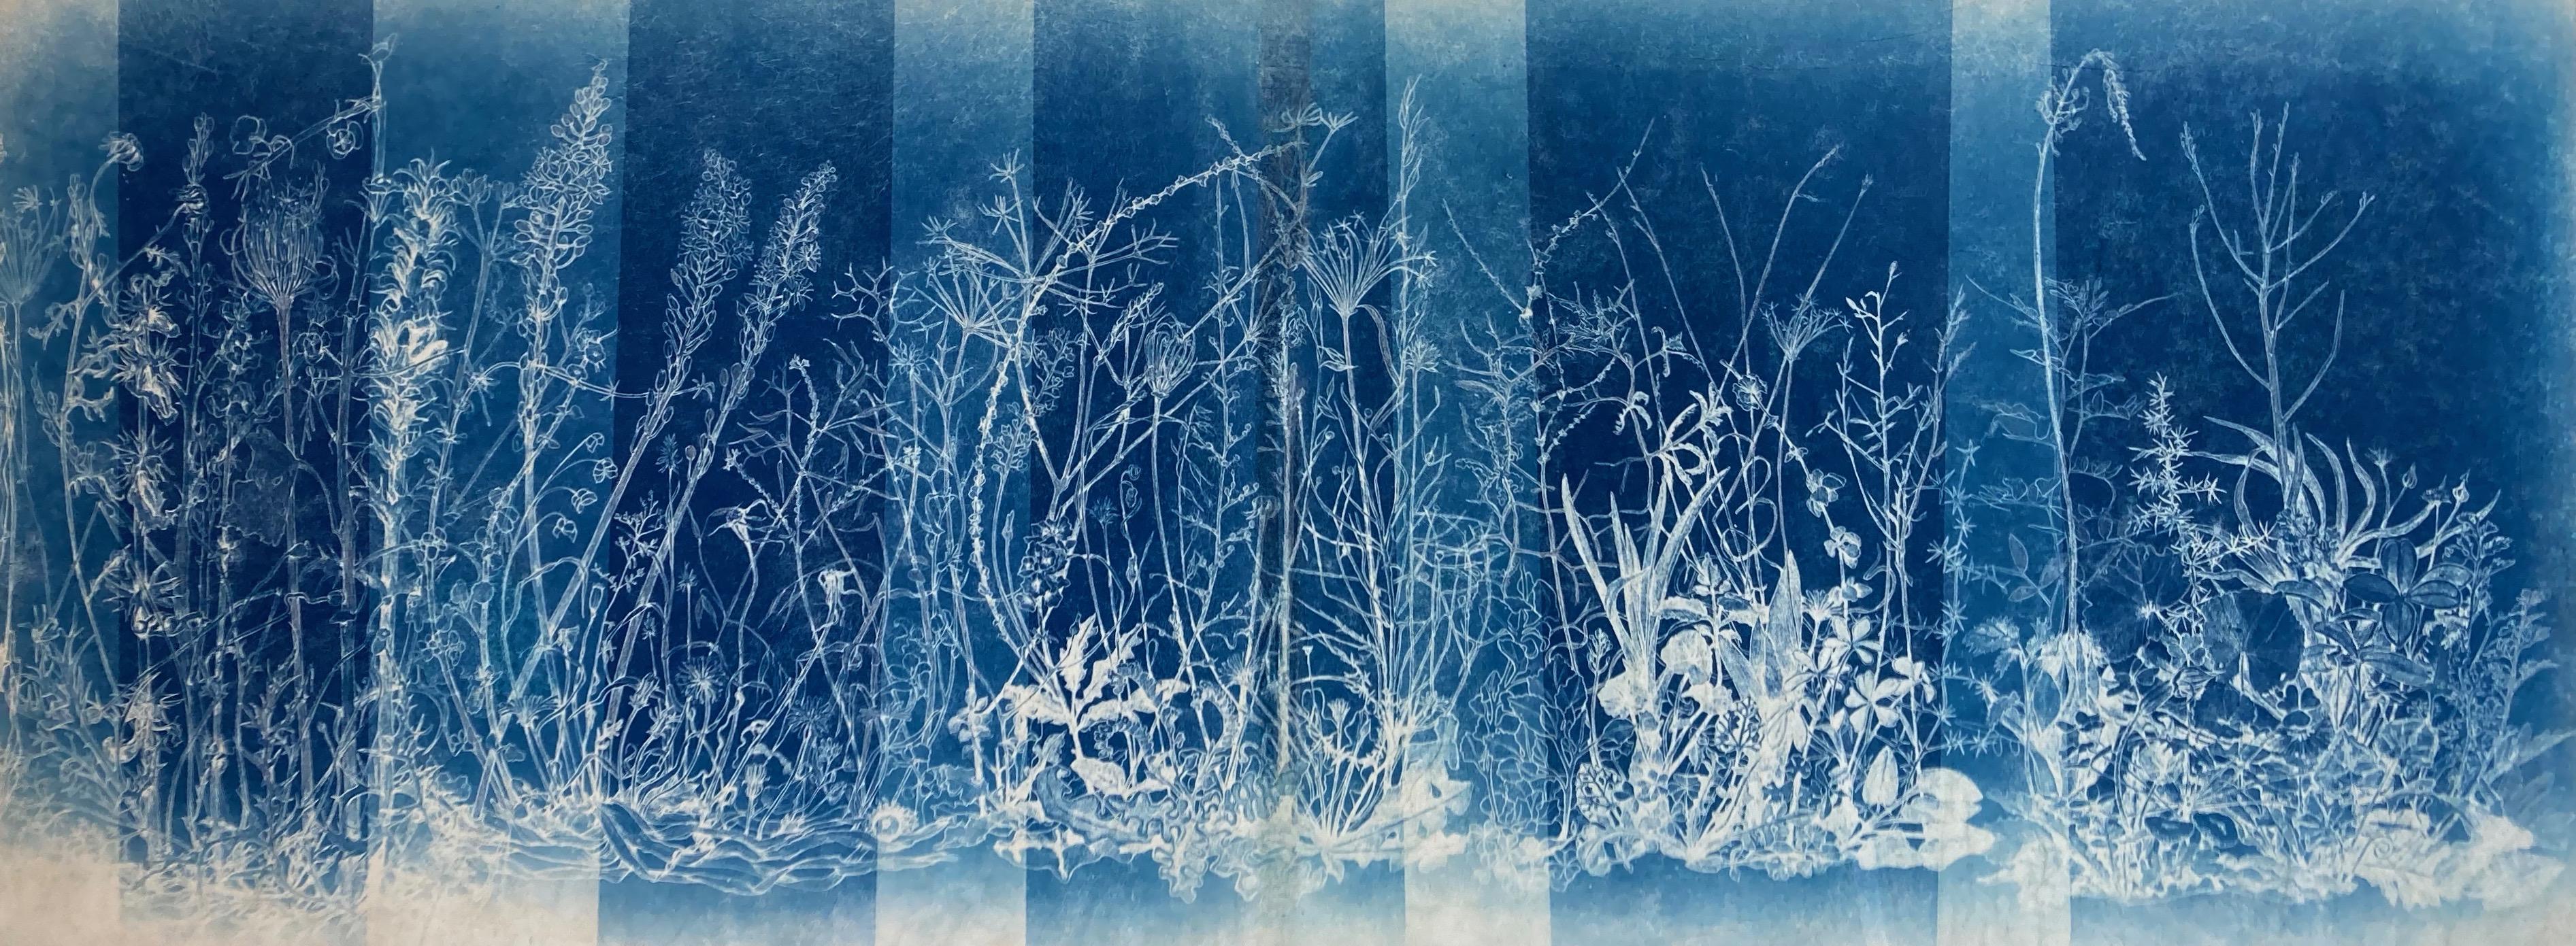 Judith Allen-Efstathiou Landscape Photograph – ""Mapping the Walk"" Realistische/abstrakte fotografische Blumenstudie in Blau / Weiß